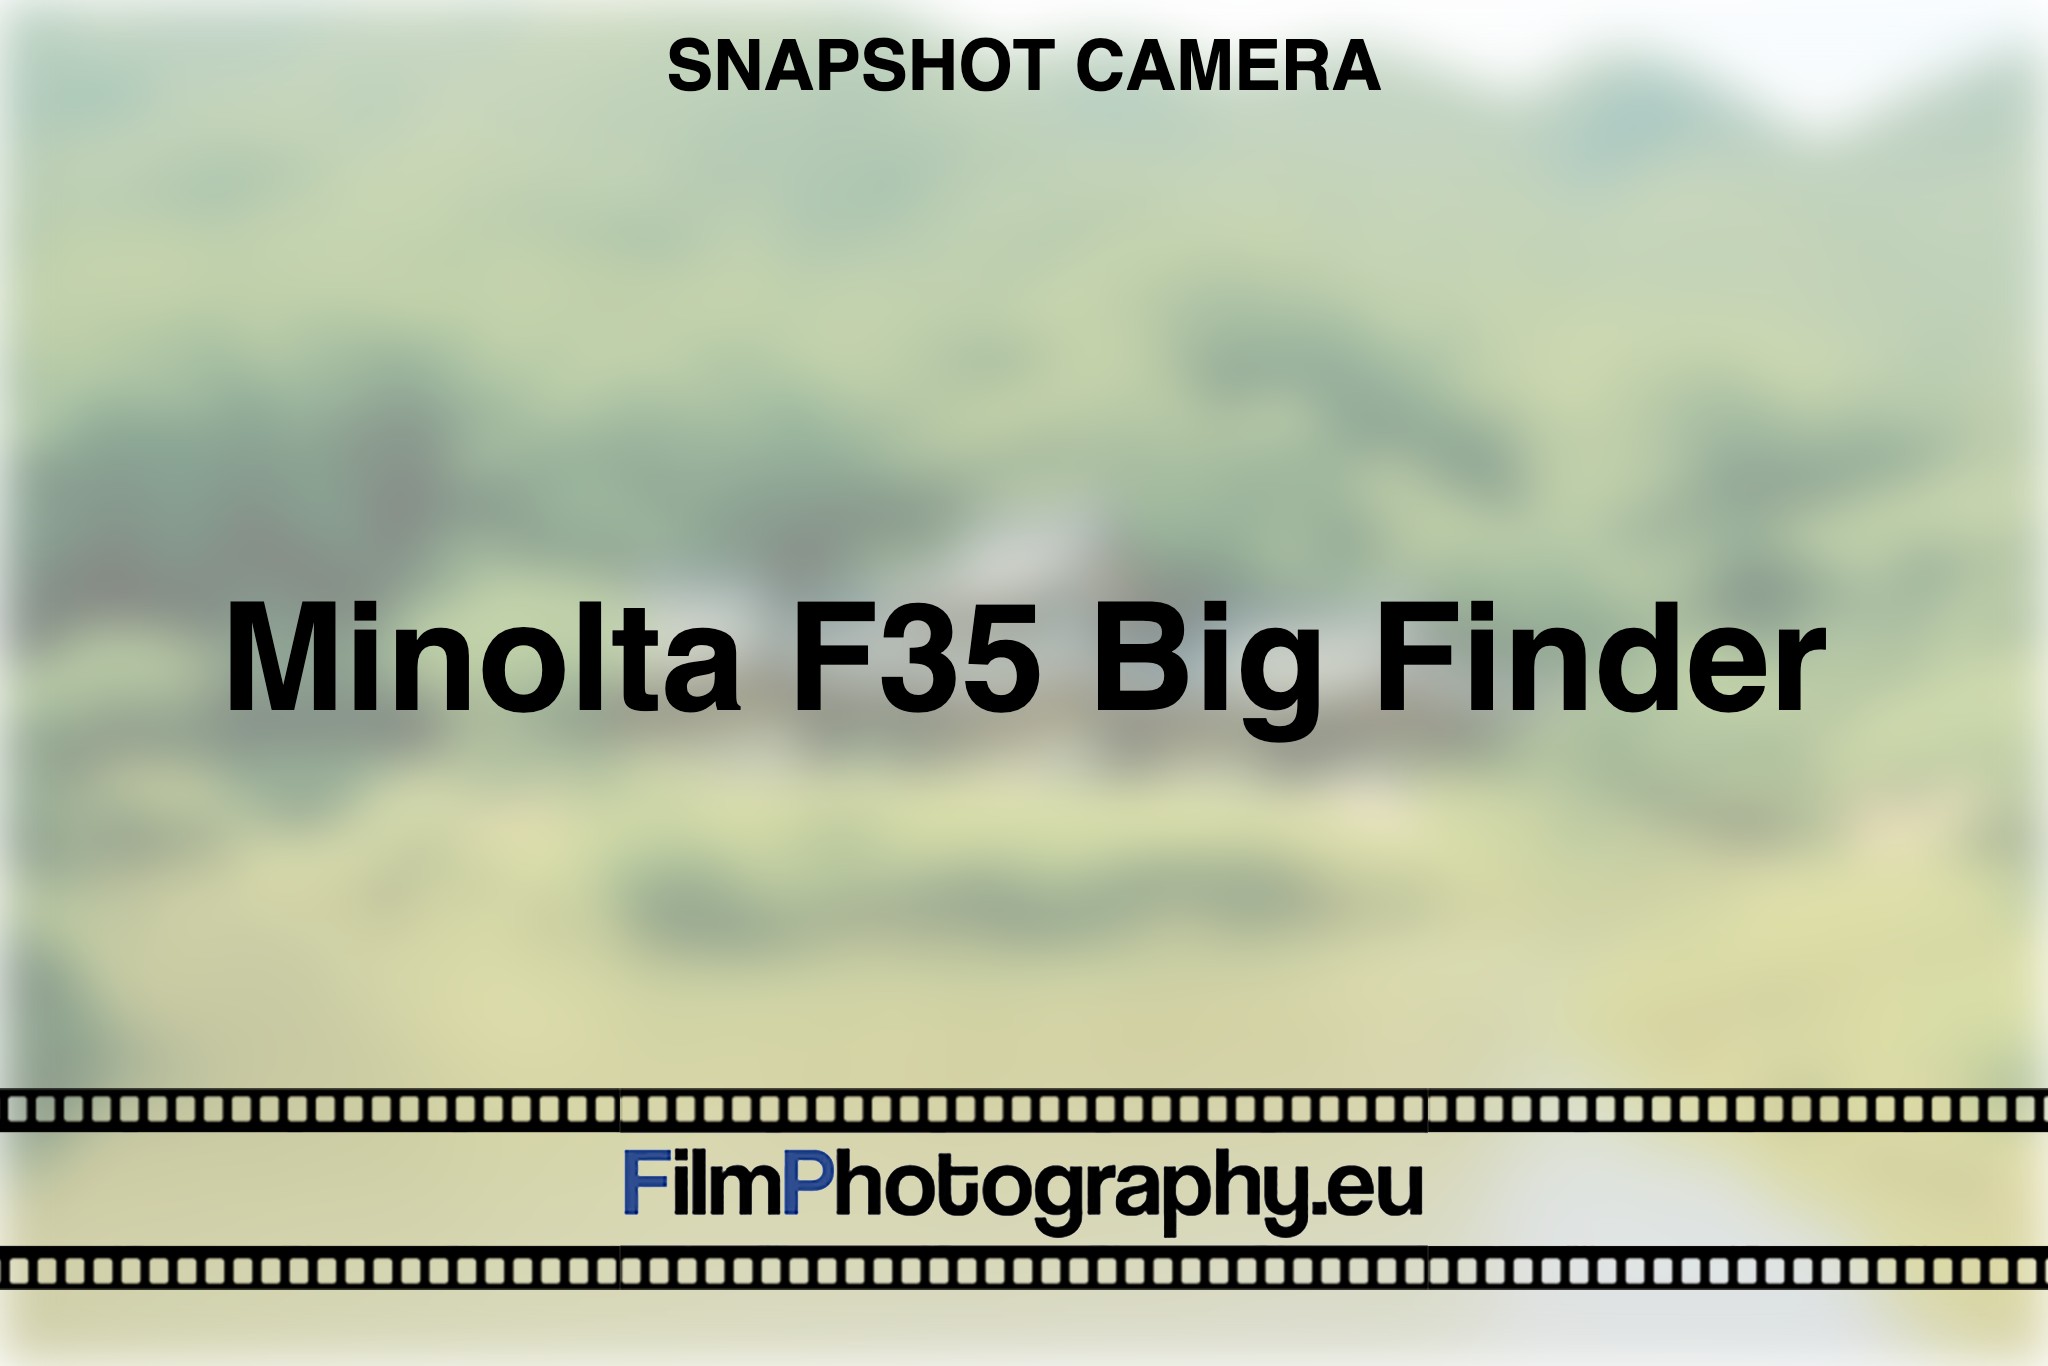 minolta-f35-big-finder-snapshot-camera-bnv